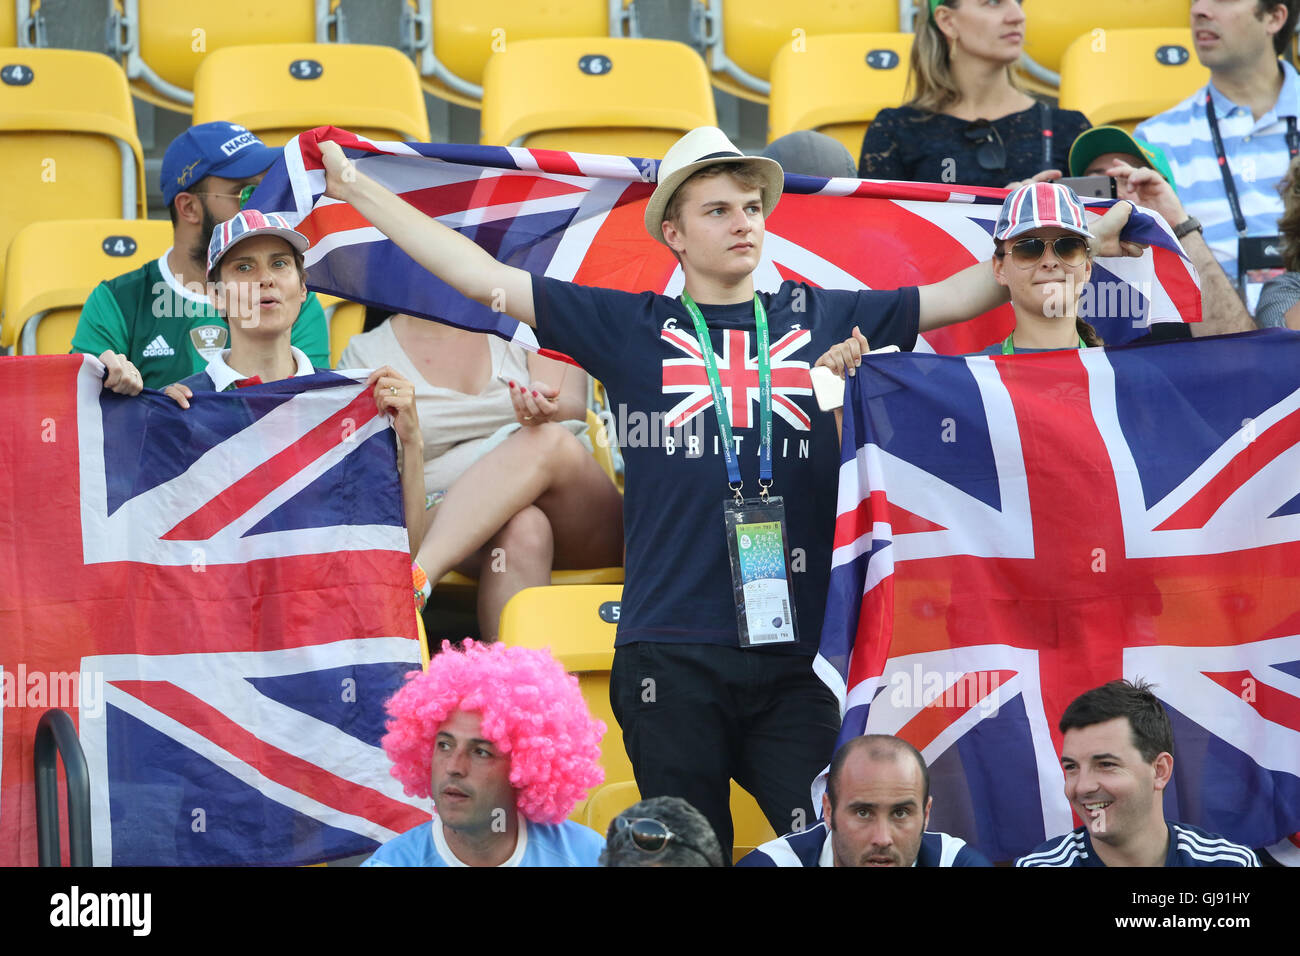 Rio de Janeiro, Brasilien. August 2016, 14th. Britische Fans winken ihre Union Jacks für Andy Murray beim Murray gegen Potro Olympic Tennis Final in Rio de Janeiro, Brasilien Stockfoto